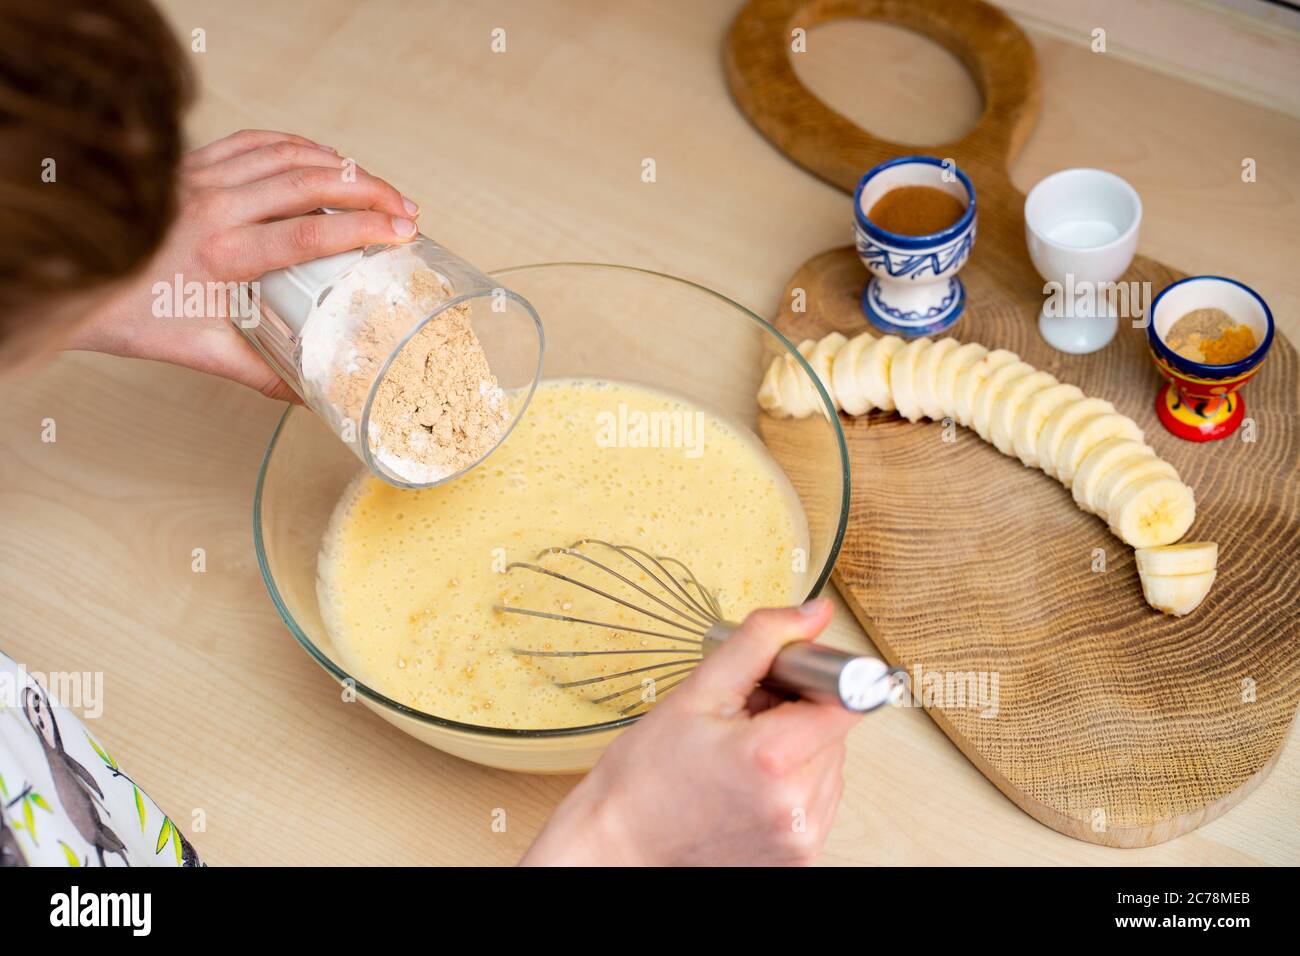 La niña sostiene un vaso con harina y prepara, fácil de hacer y saludable, pan casero de plátano. Foto de stock